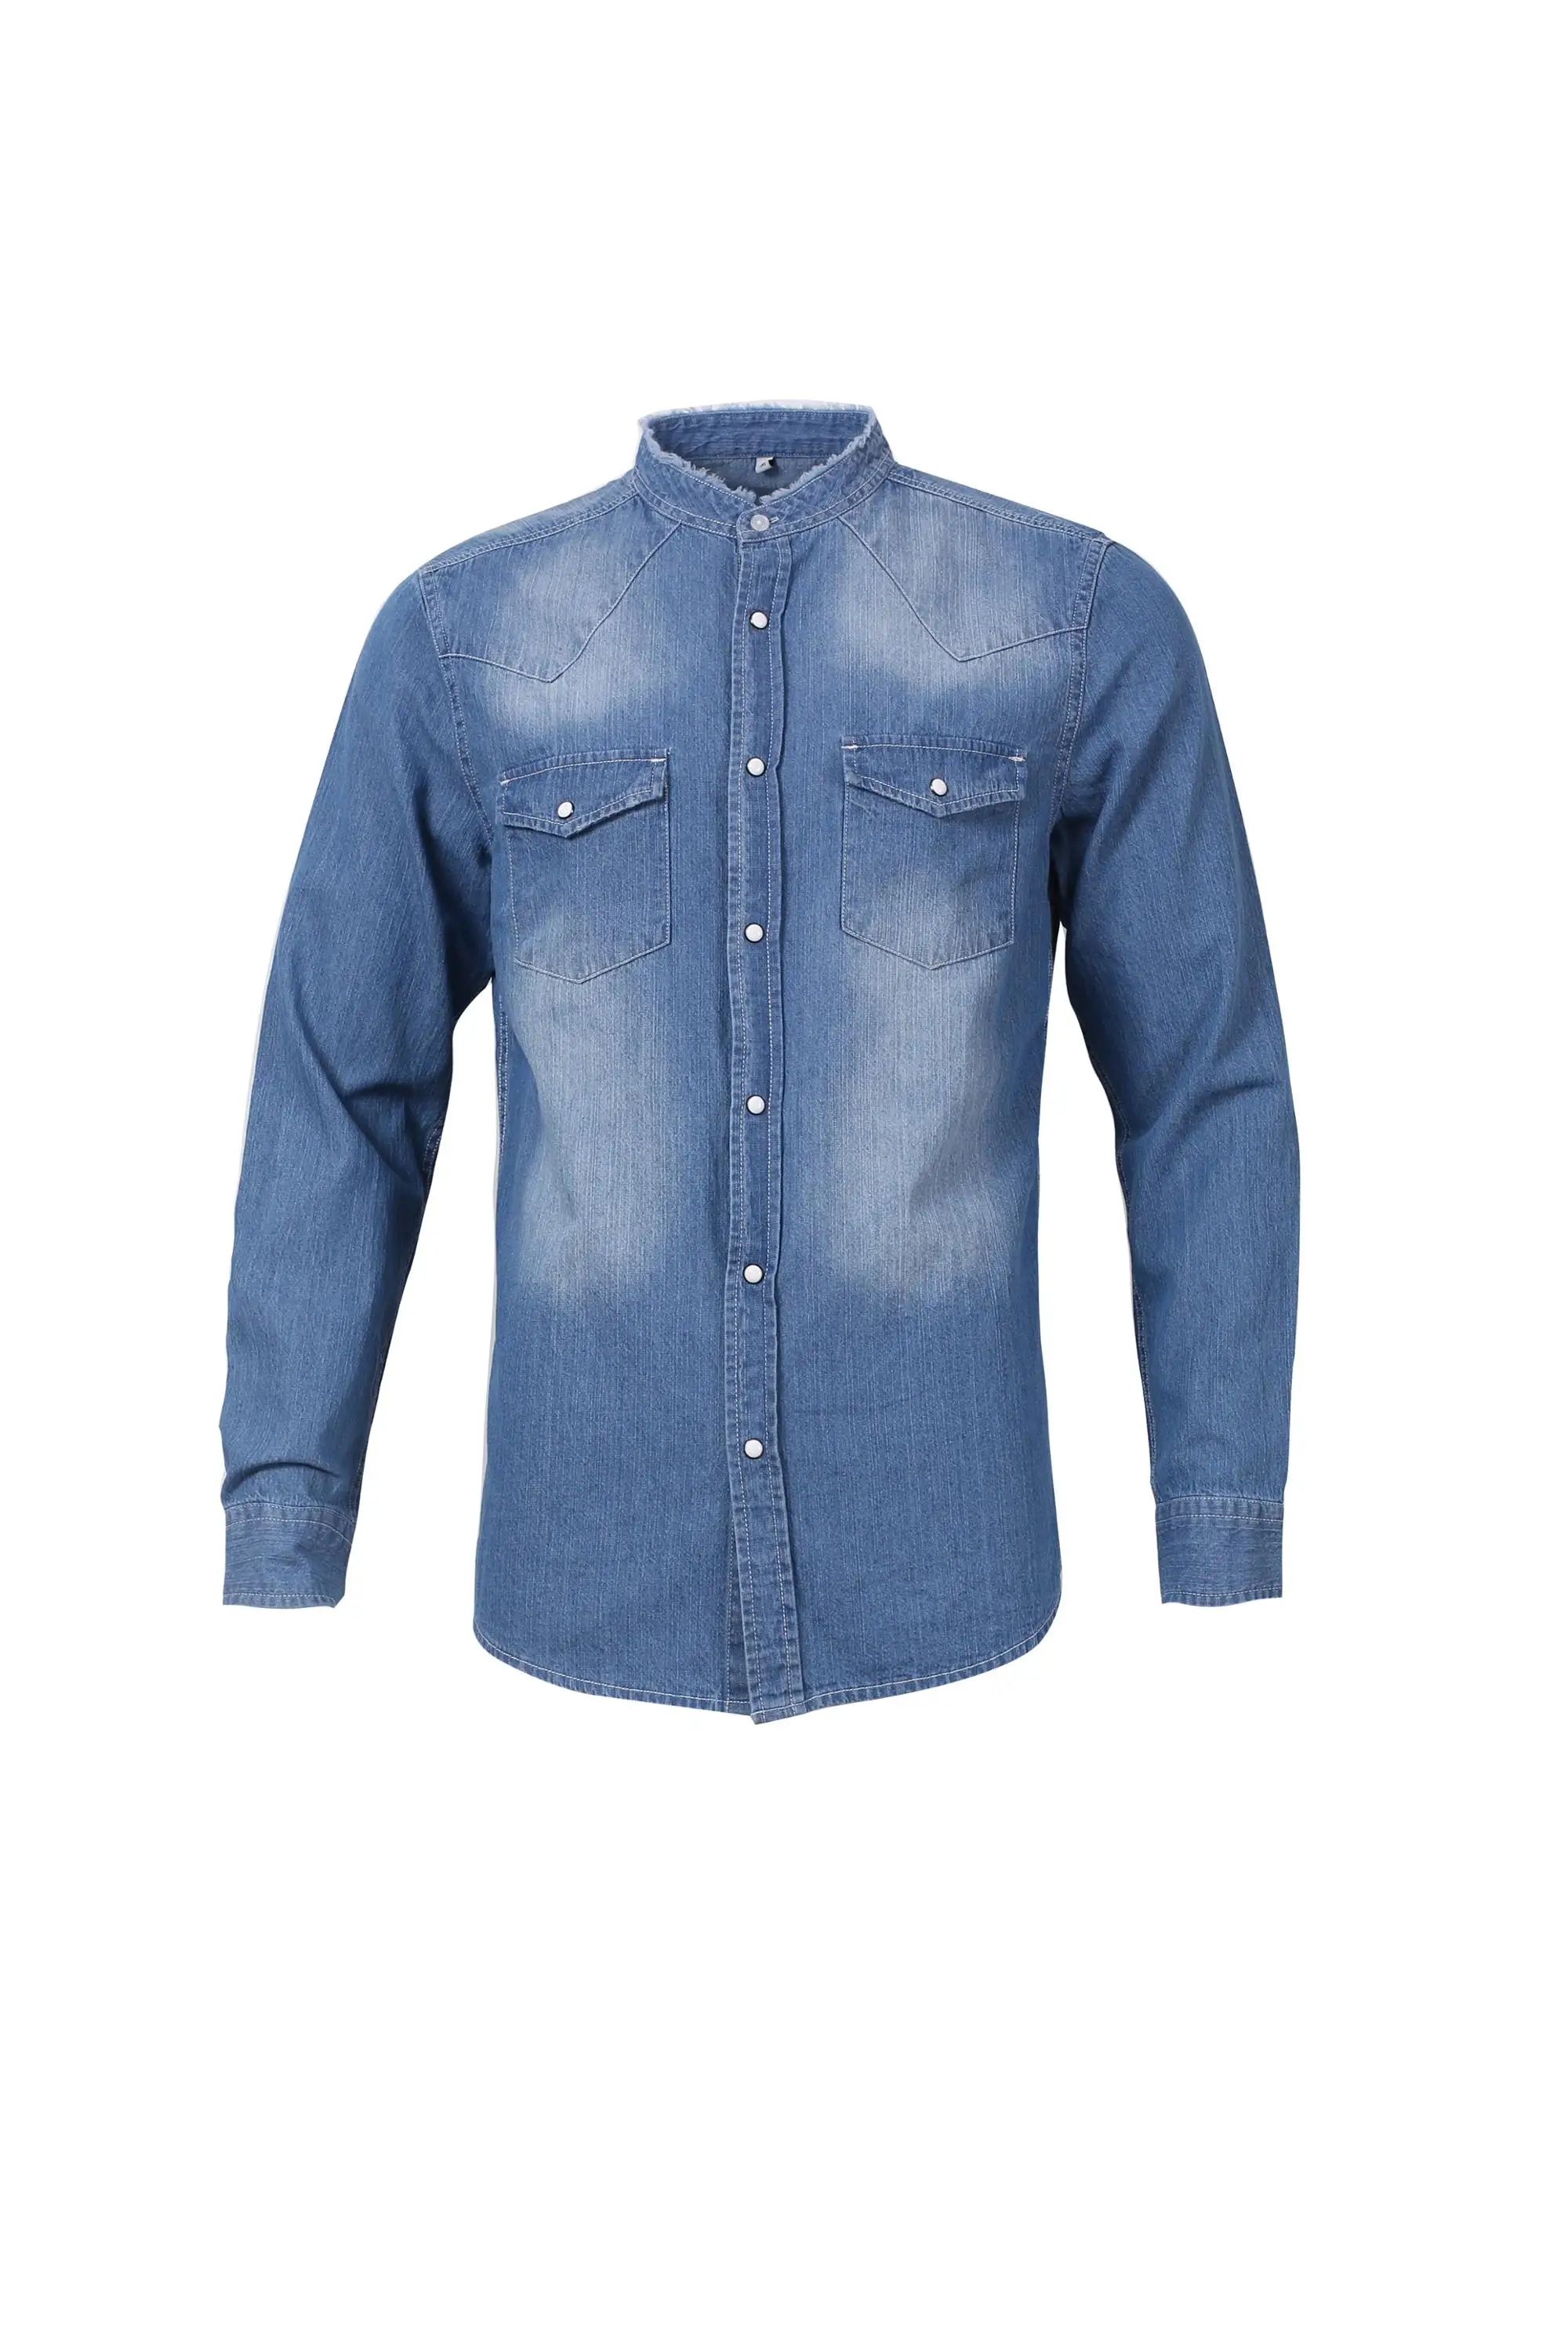 Source Últimos camiseta para hombres vestido de t tela de la camisa de manga larga 100% ropa casual ropa on m.alibaba.com